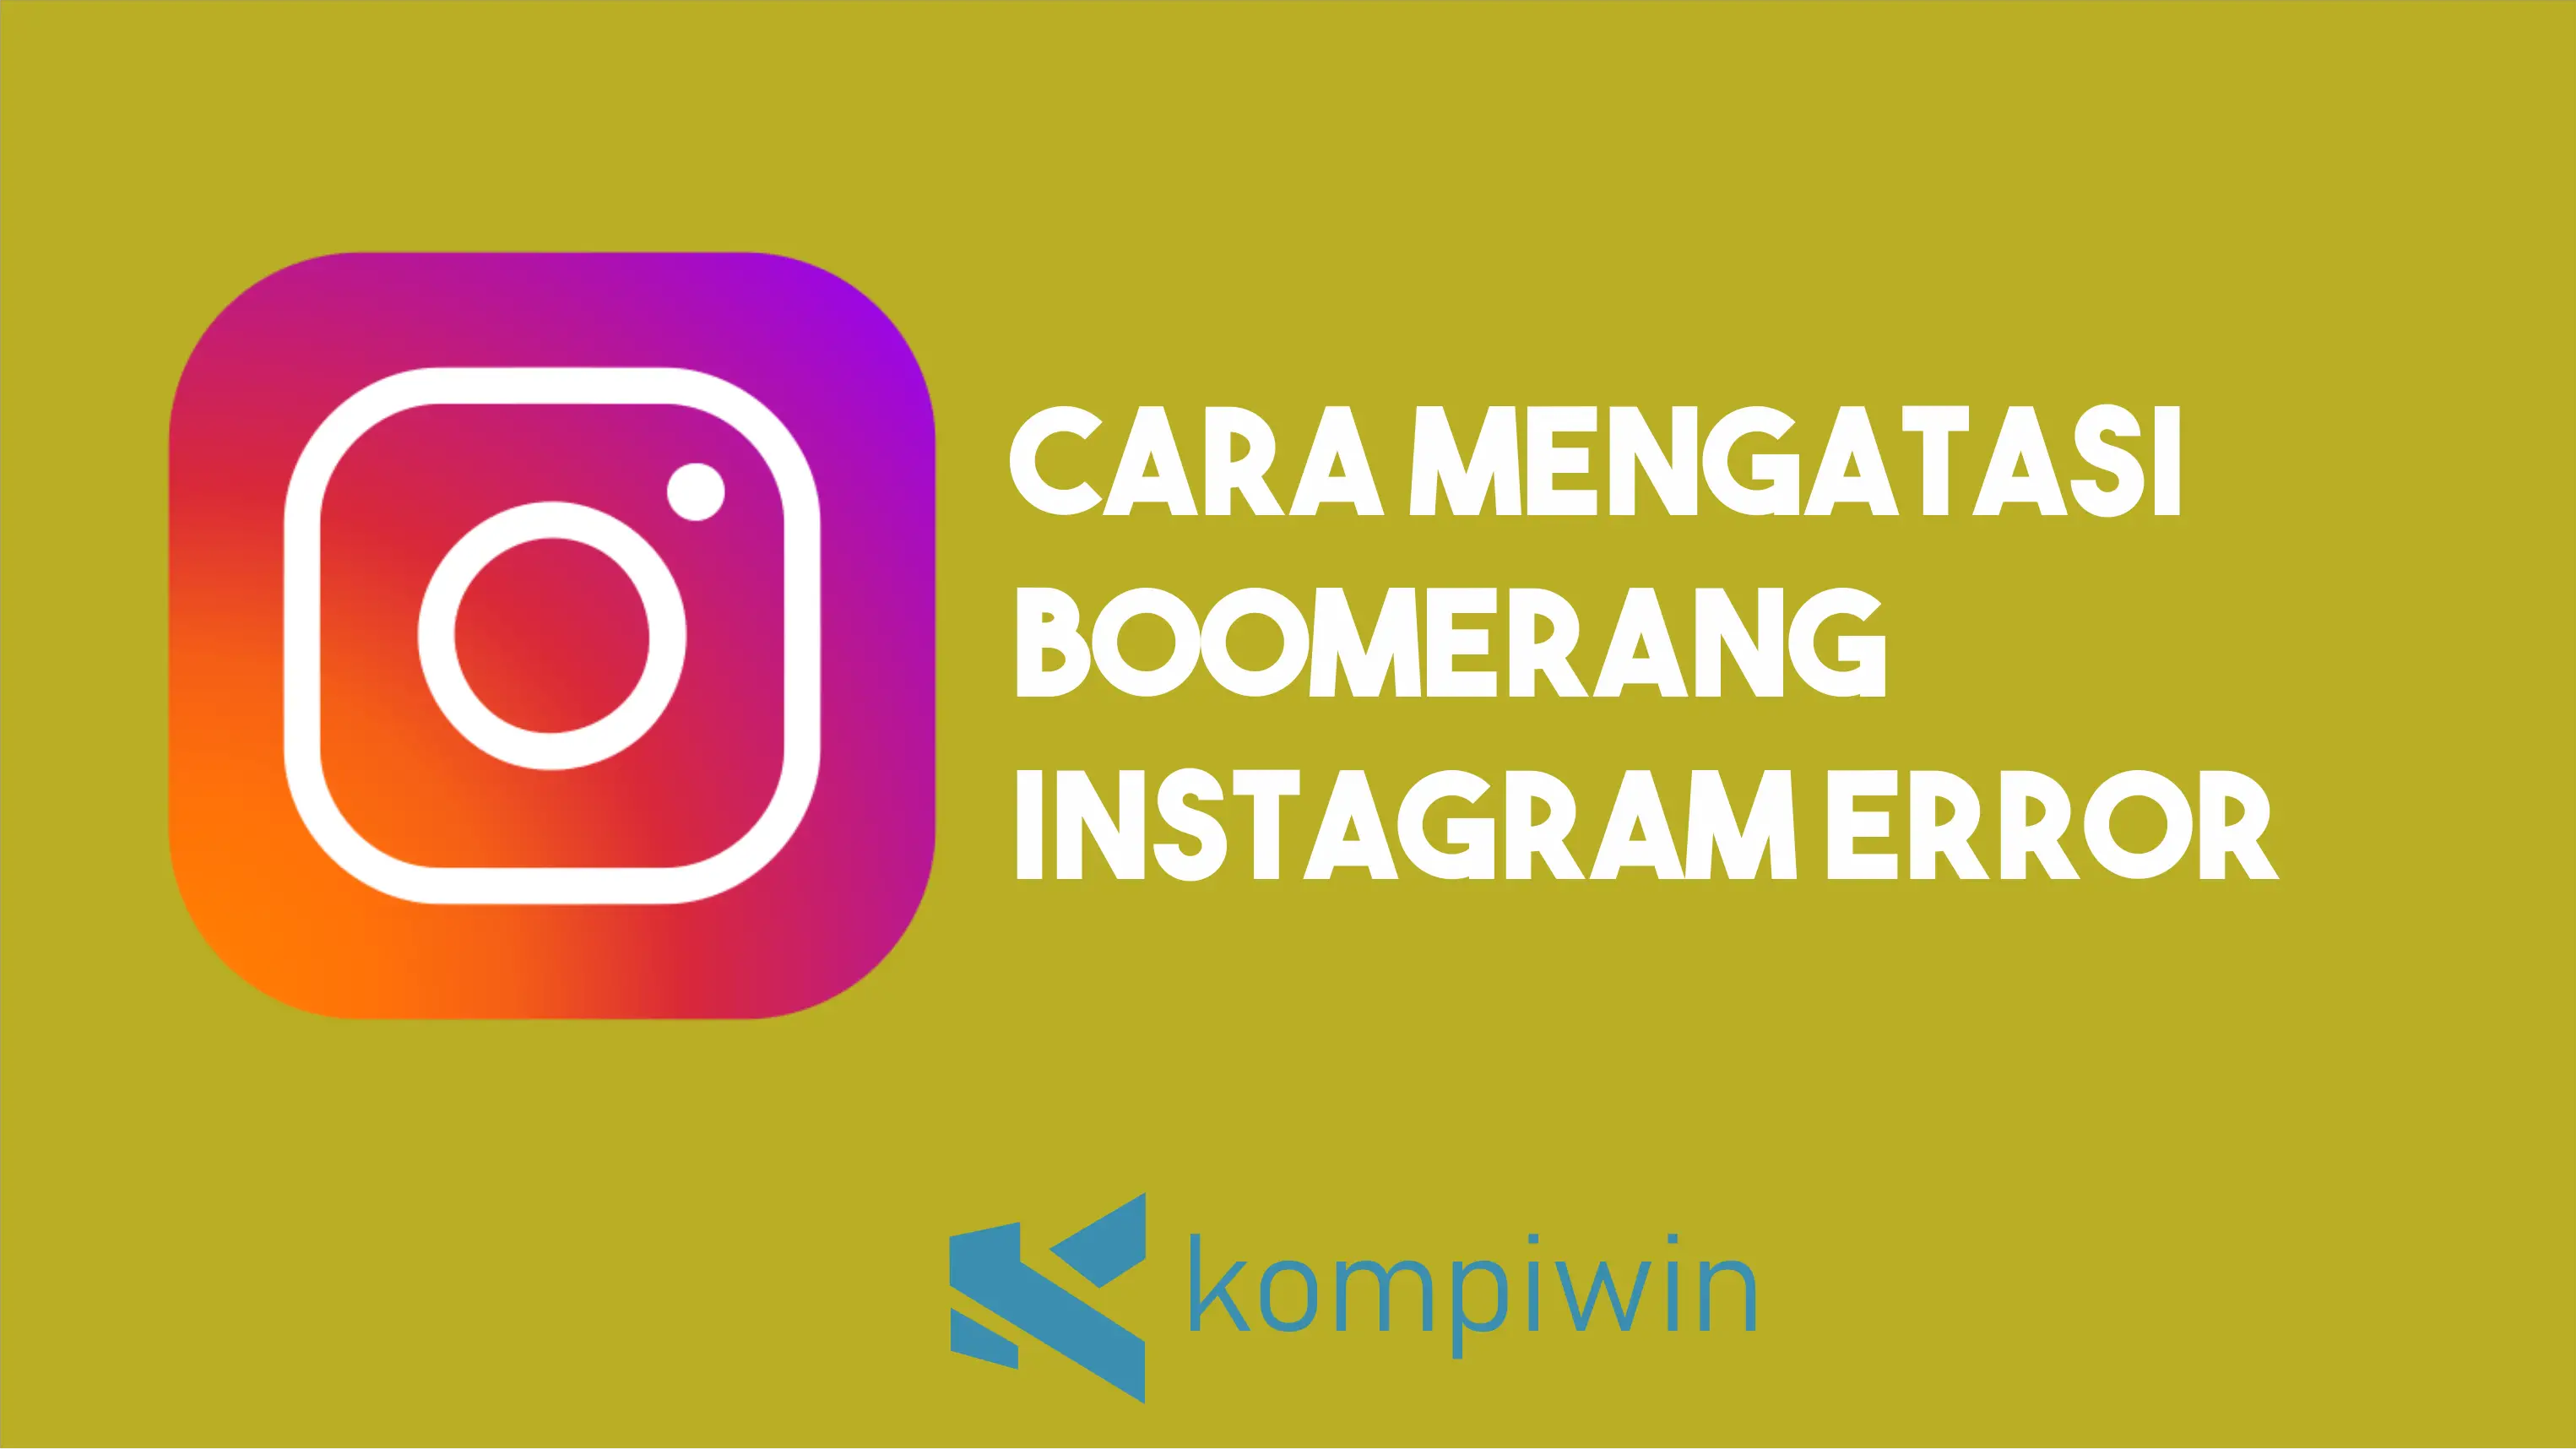 6 Cara Mengatasi Boomerang Instagram Error (Terbukti) 1